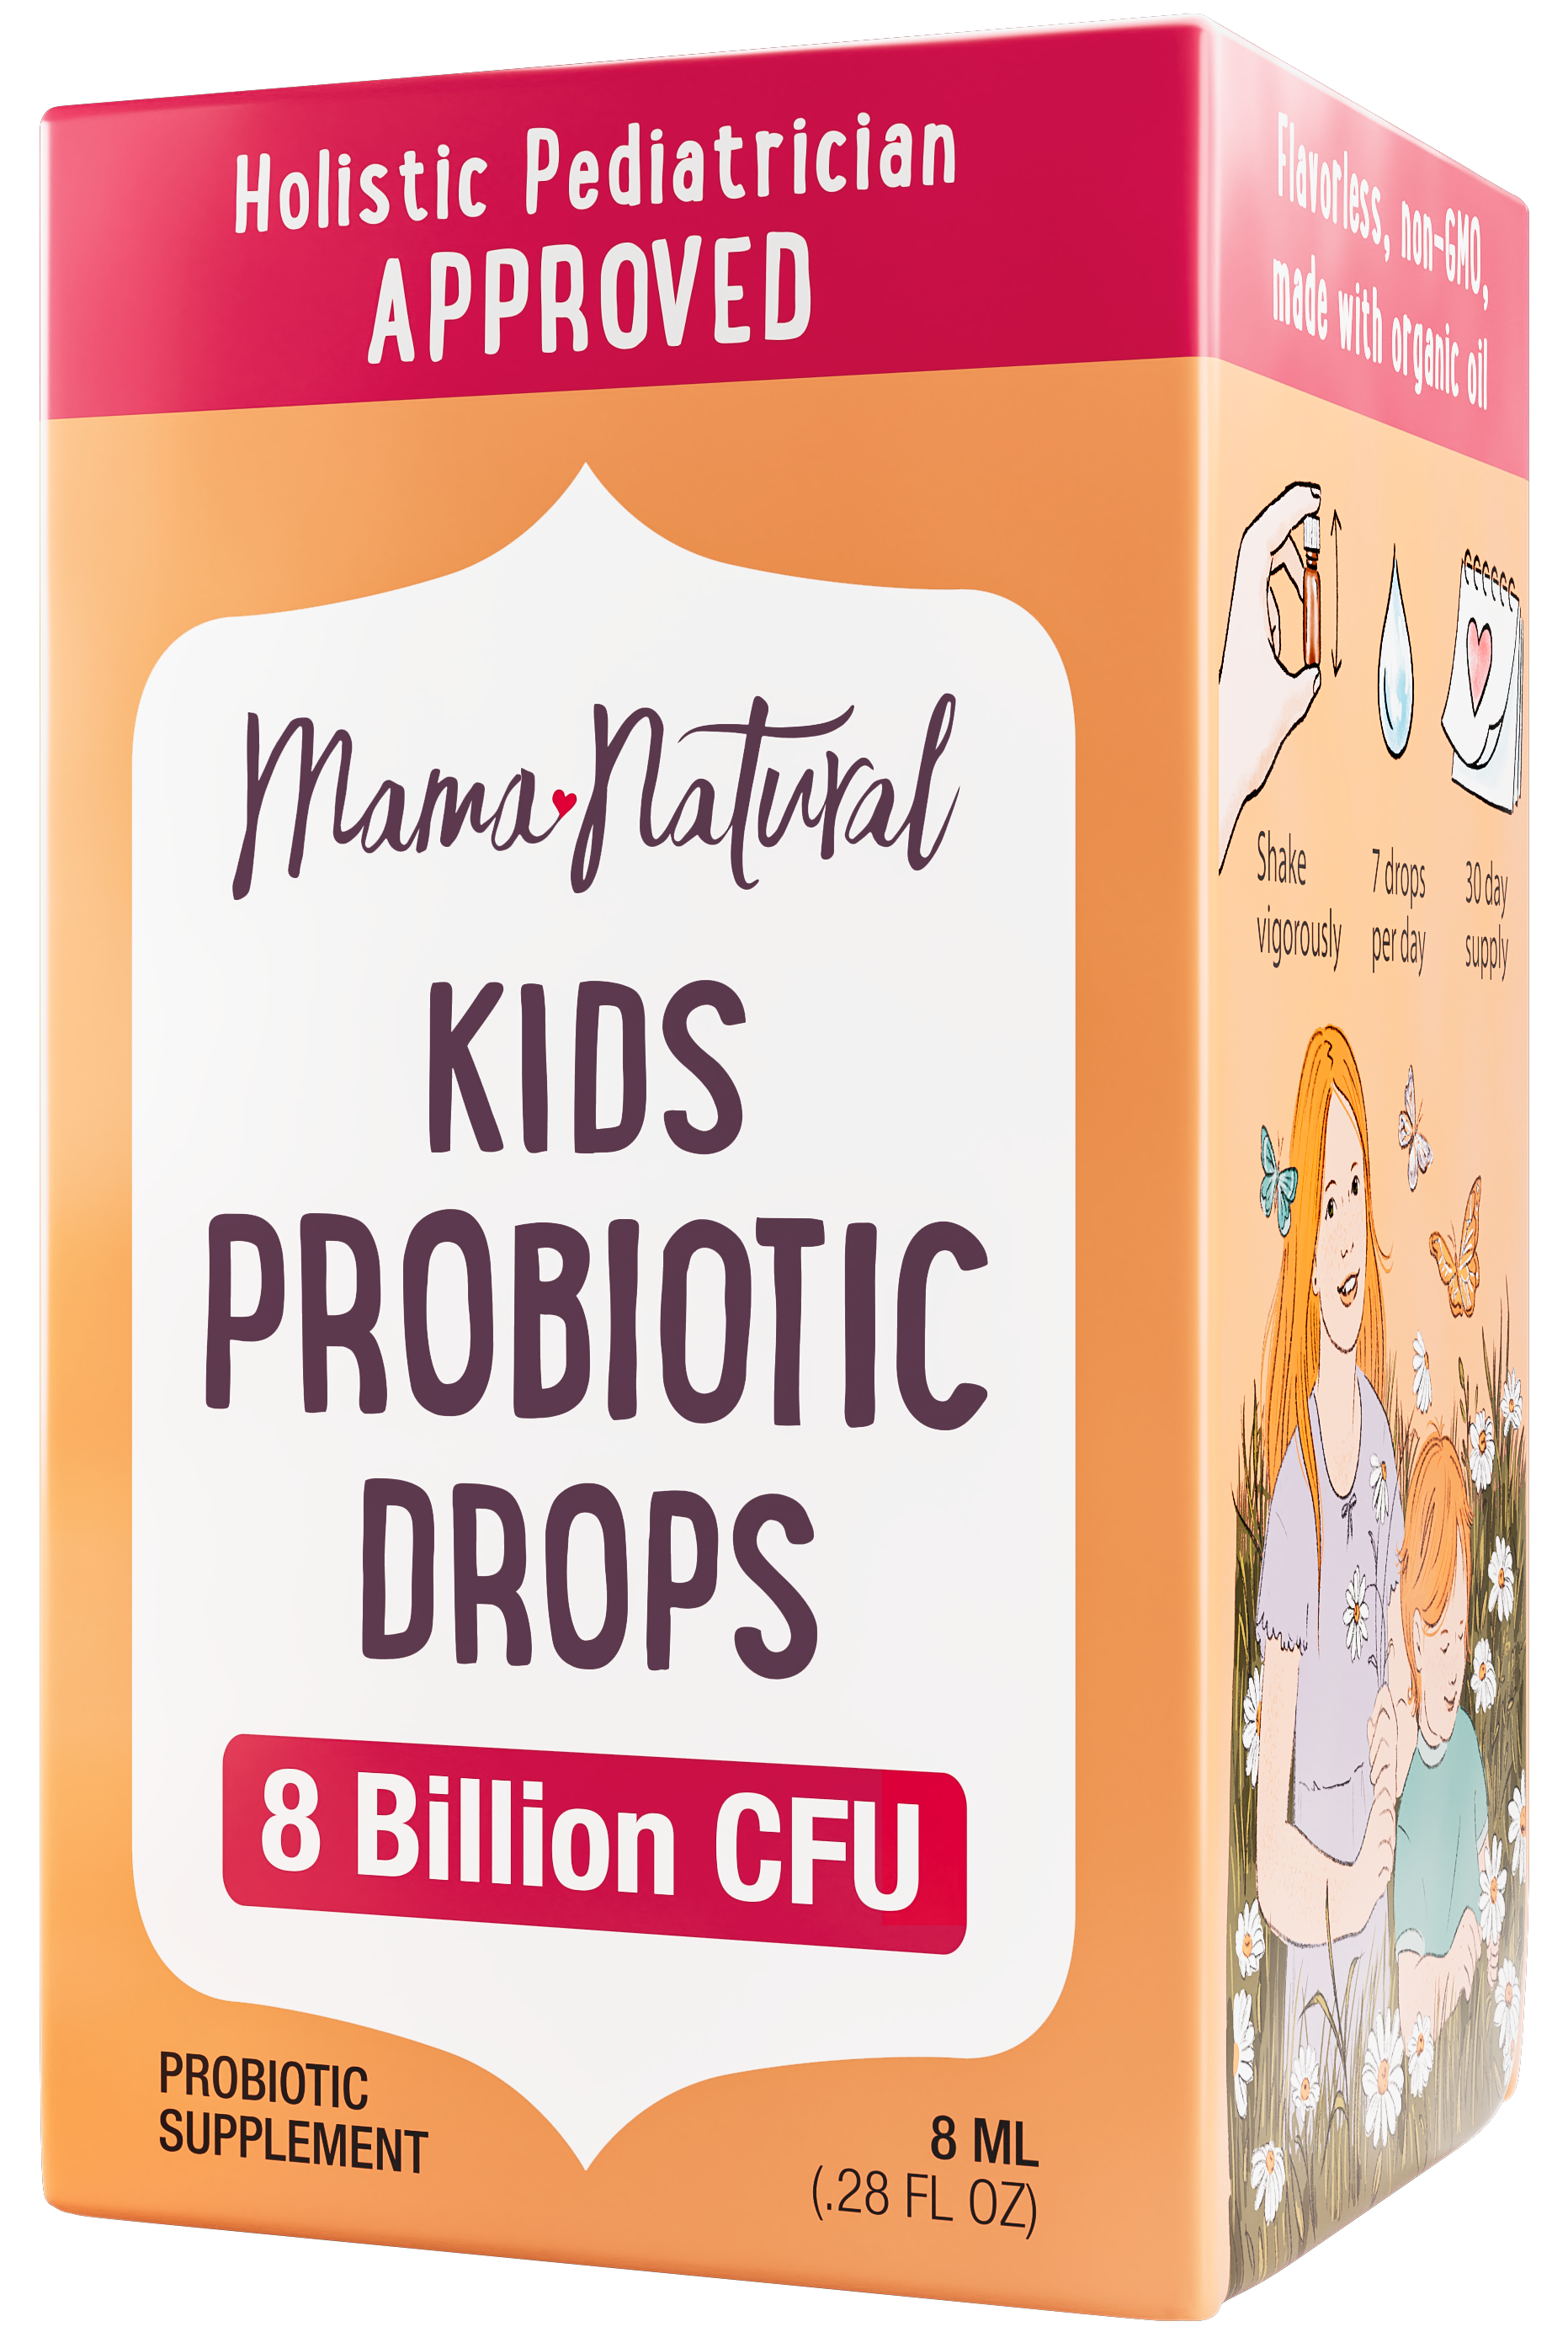 Kids Probiotic Drops box .png__PID:6f8ba87a-bdb6-4b9f-913f-70ea8844c964